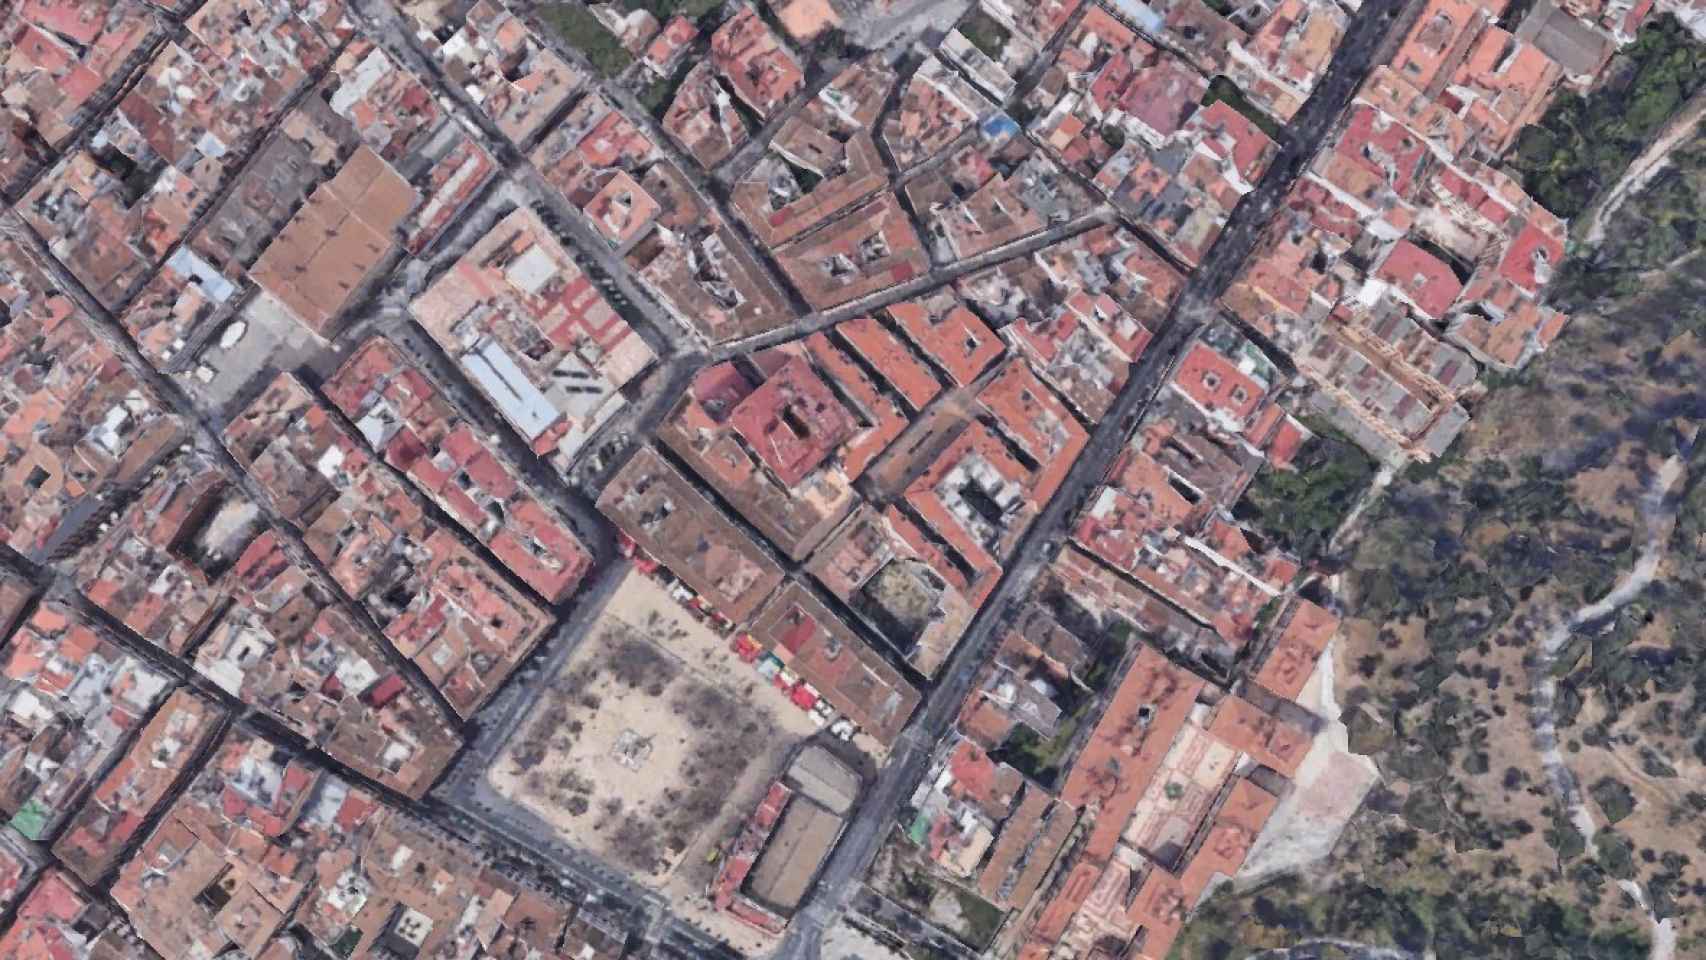 Vista de la zona donde se concentra mayor número de viviendas turísticas en Málaga.